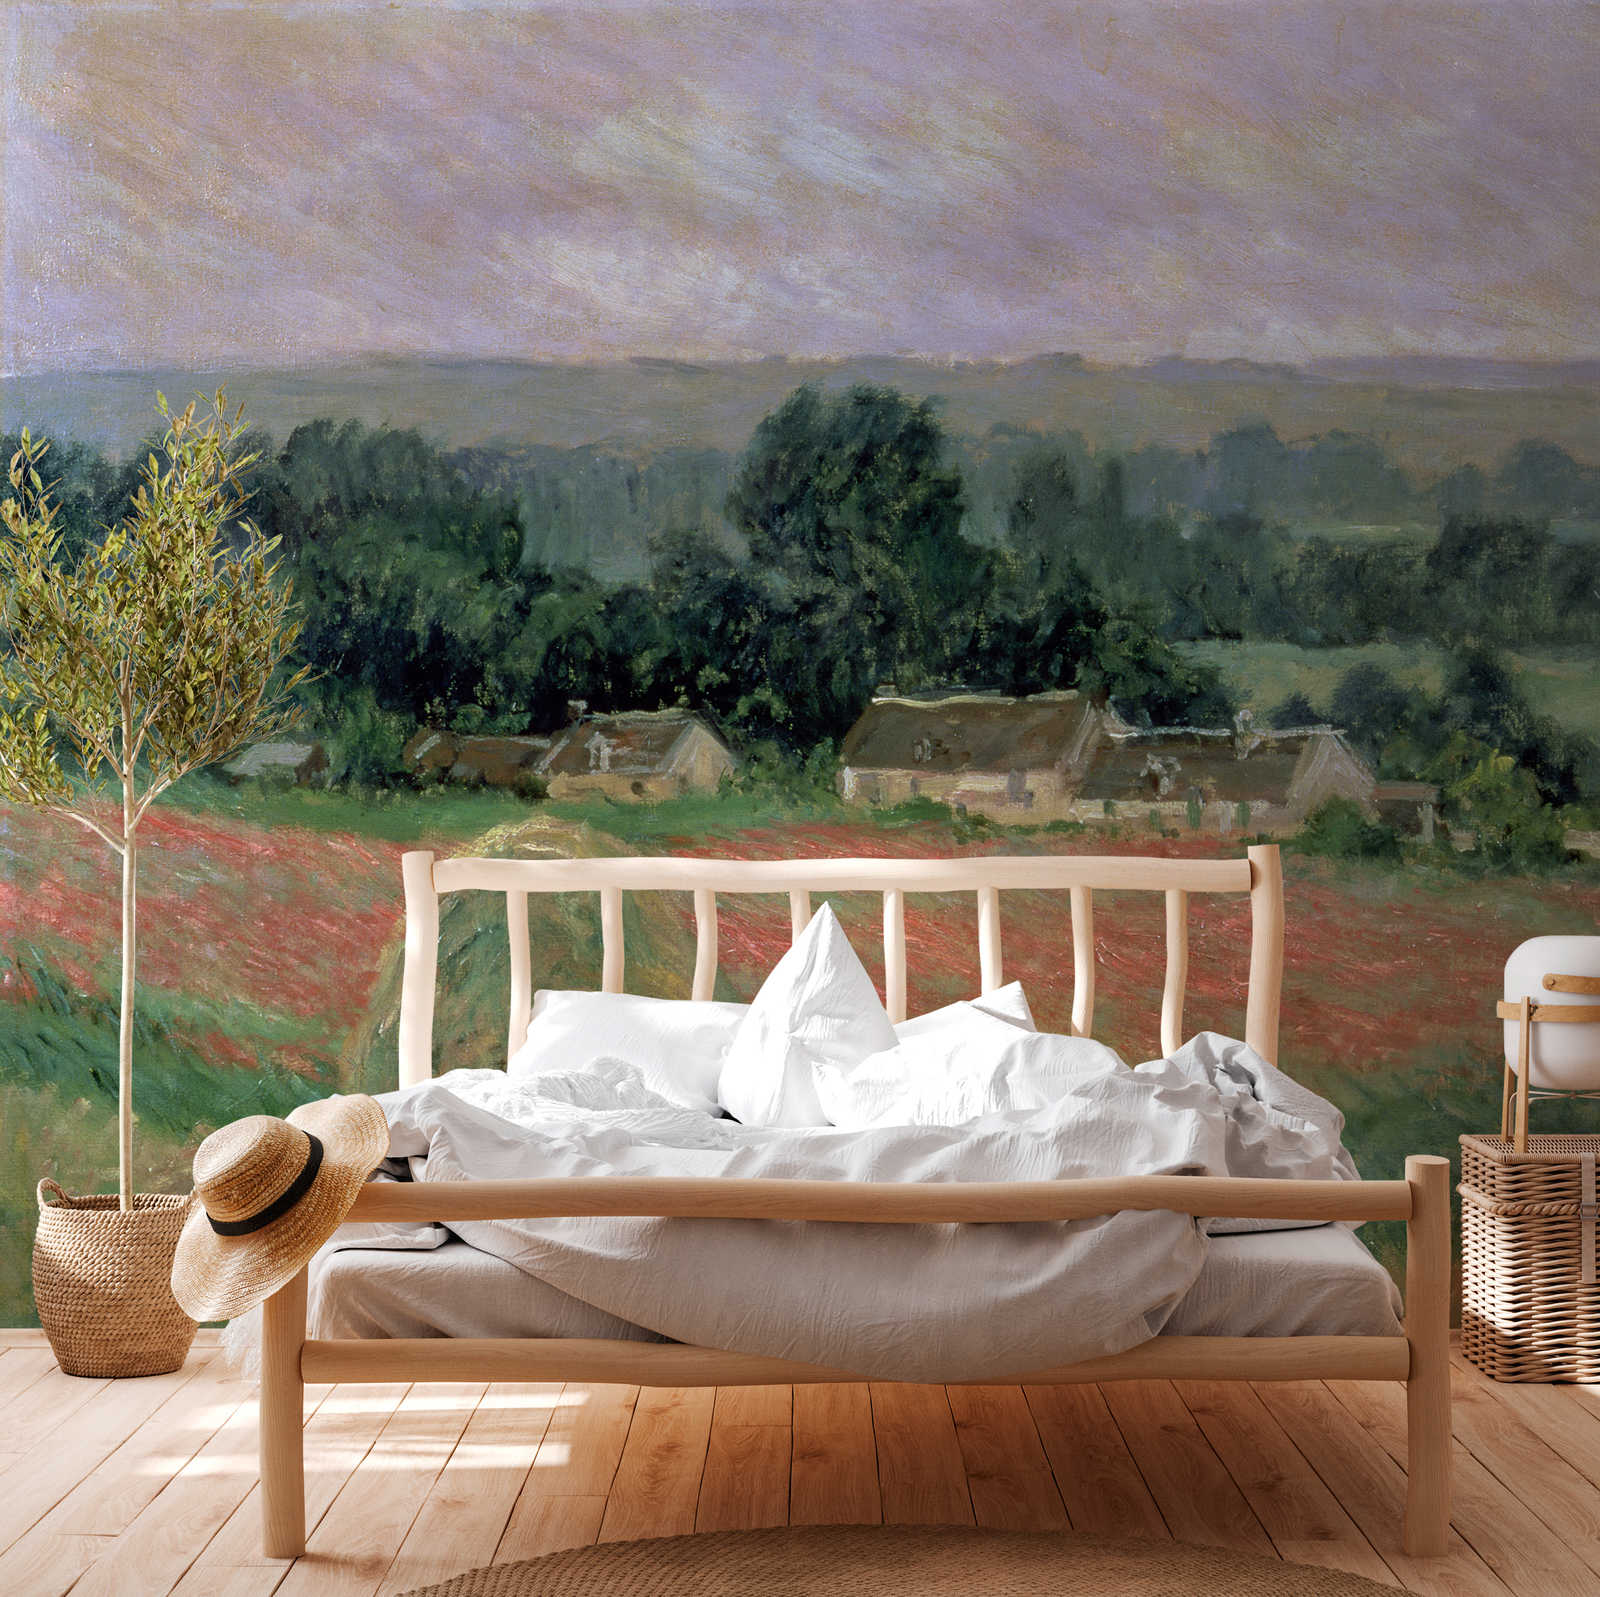             Papier peint panoramique "Botte de foin à Giverny" de Claude Monet
        